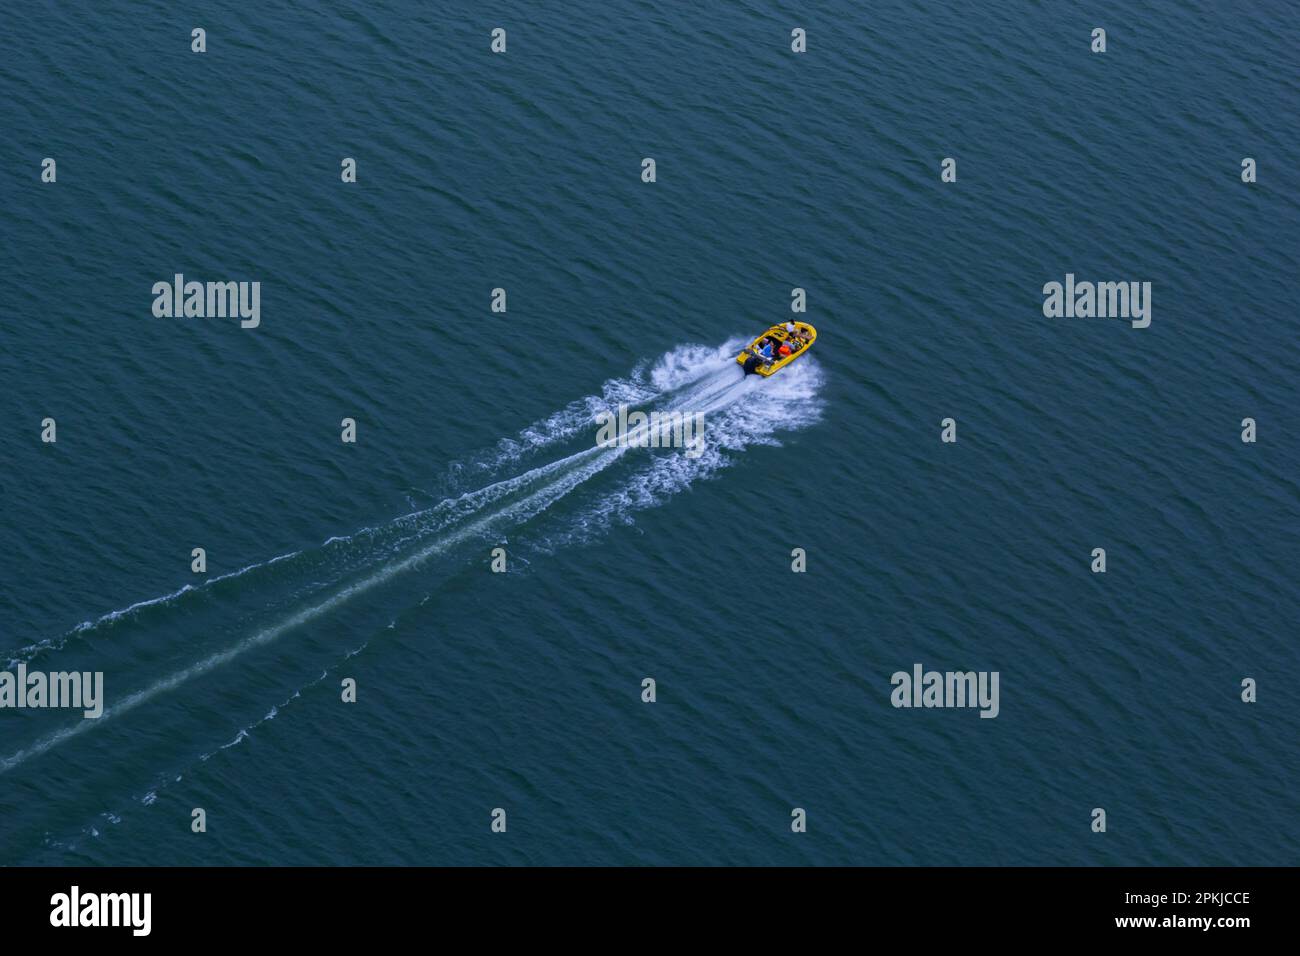 Eine Draufsicht über die Geschwindigkeit eines Motorboots, das auf dem Wasser segelt. Stockfoto